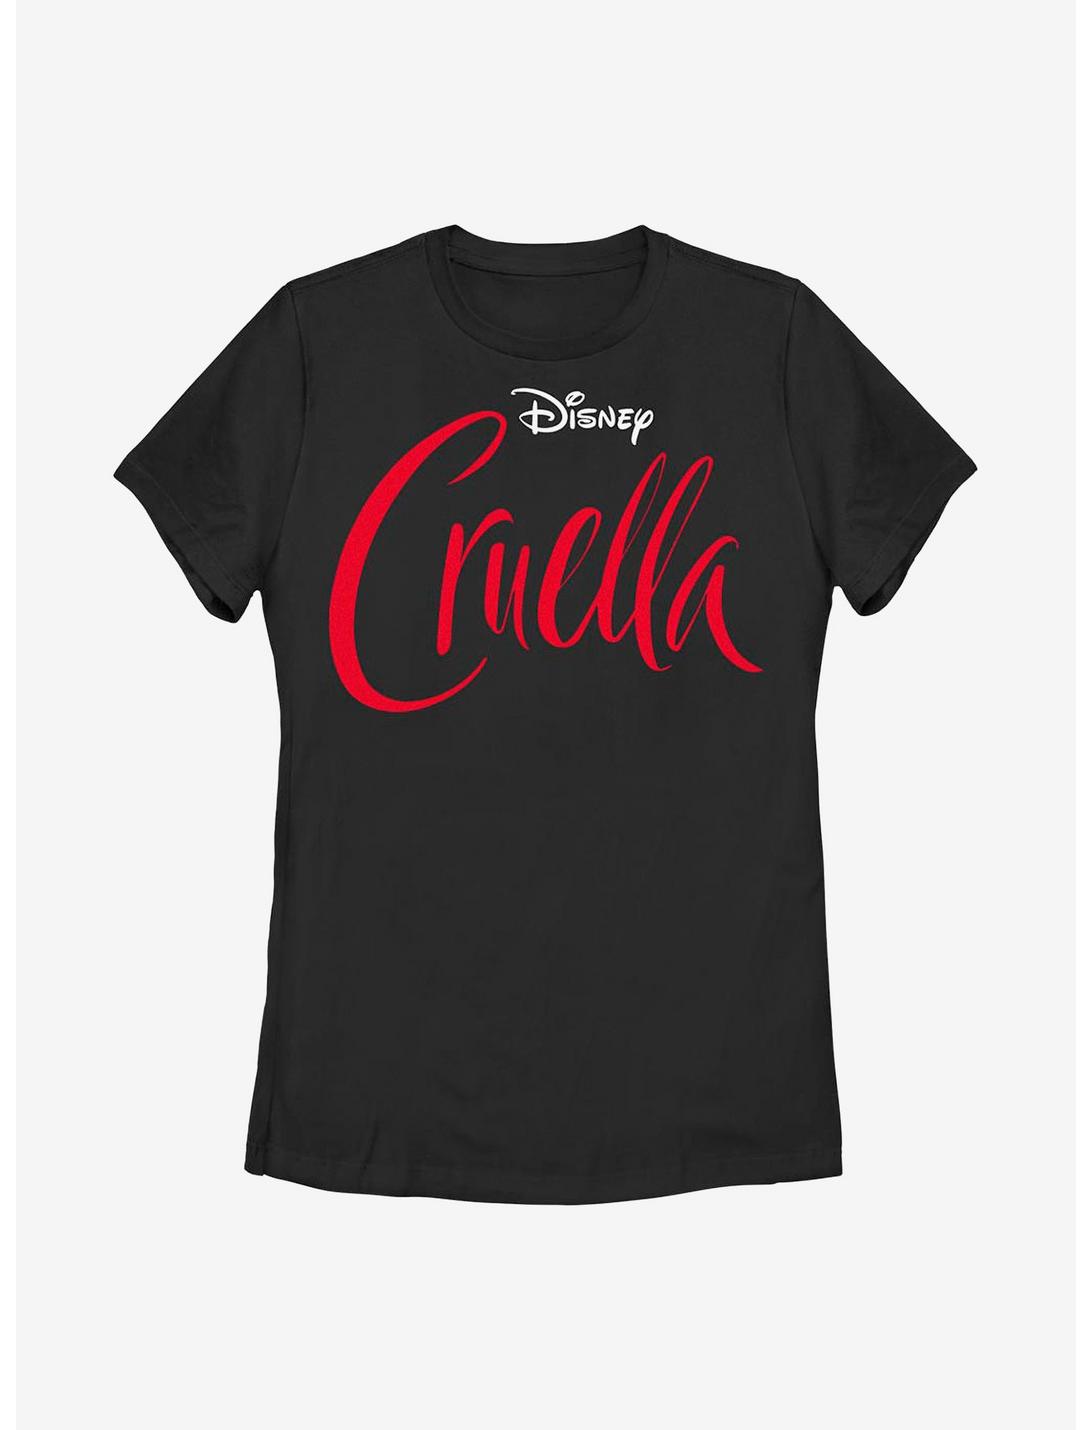 Disney Cruella Logo Womens T-Shirt, BLACK, hi-res